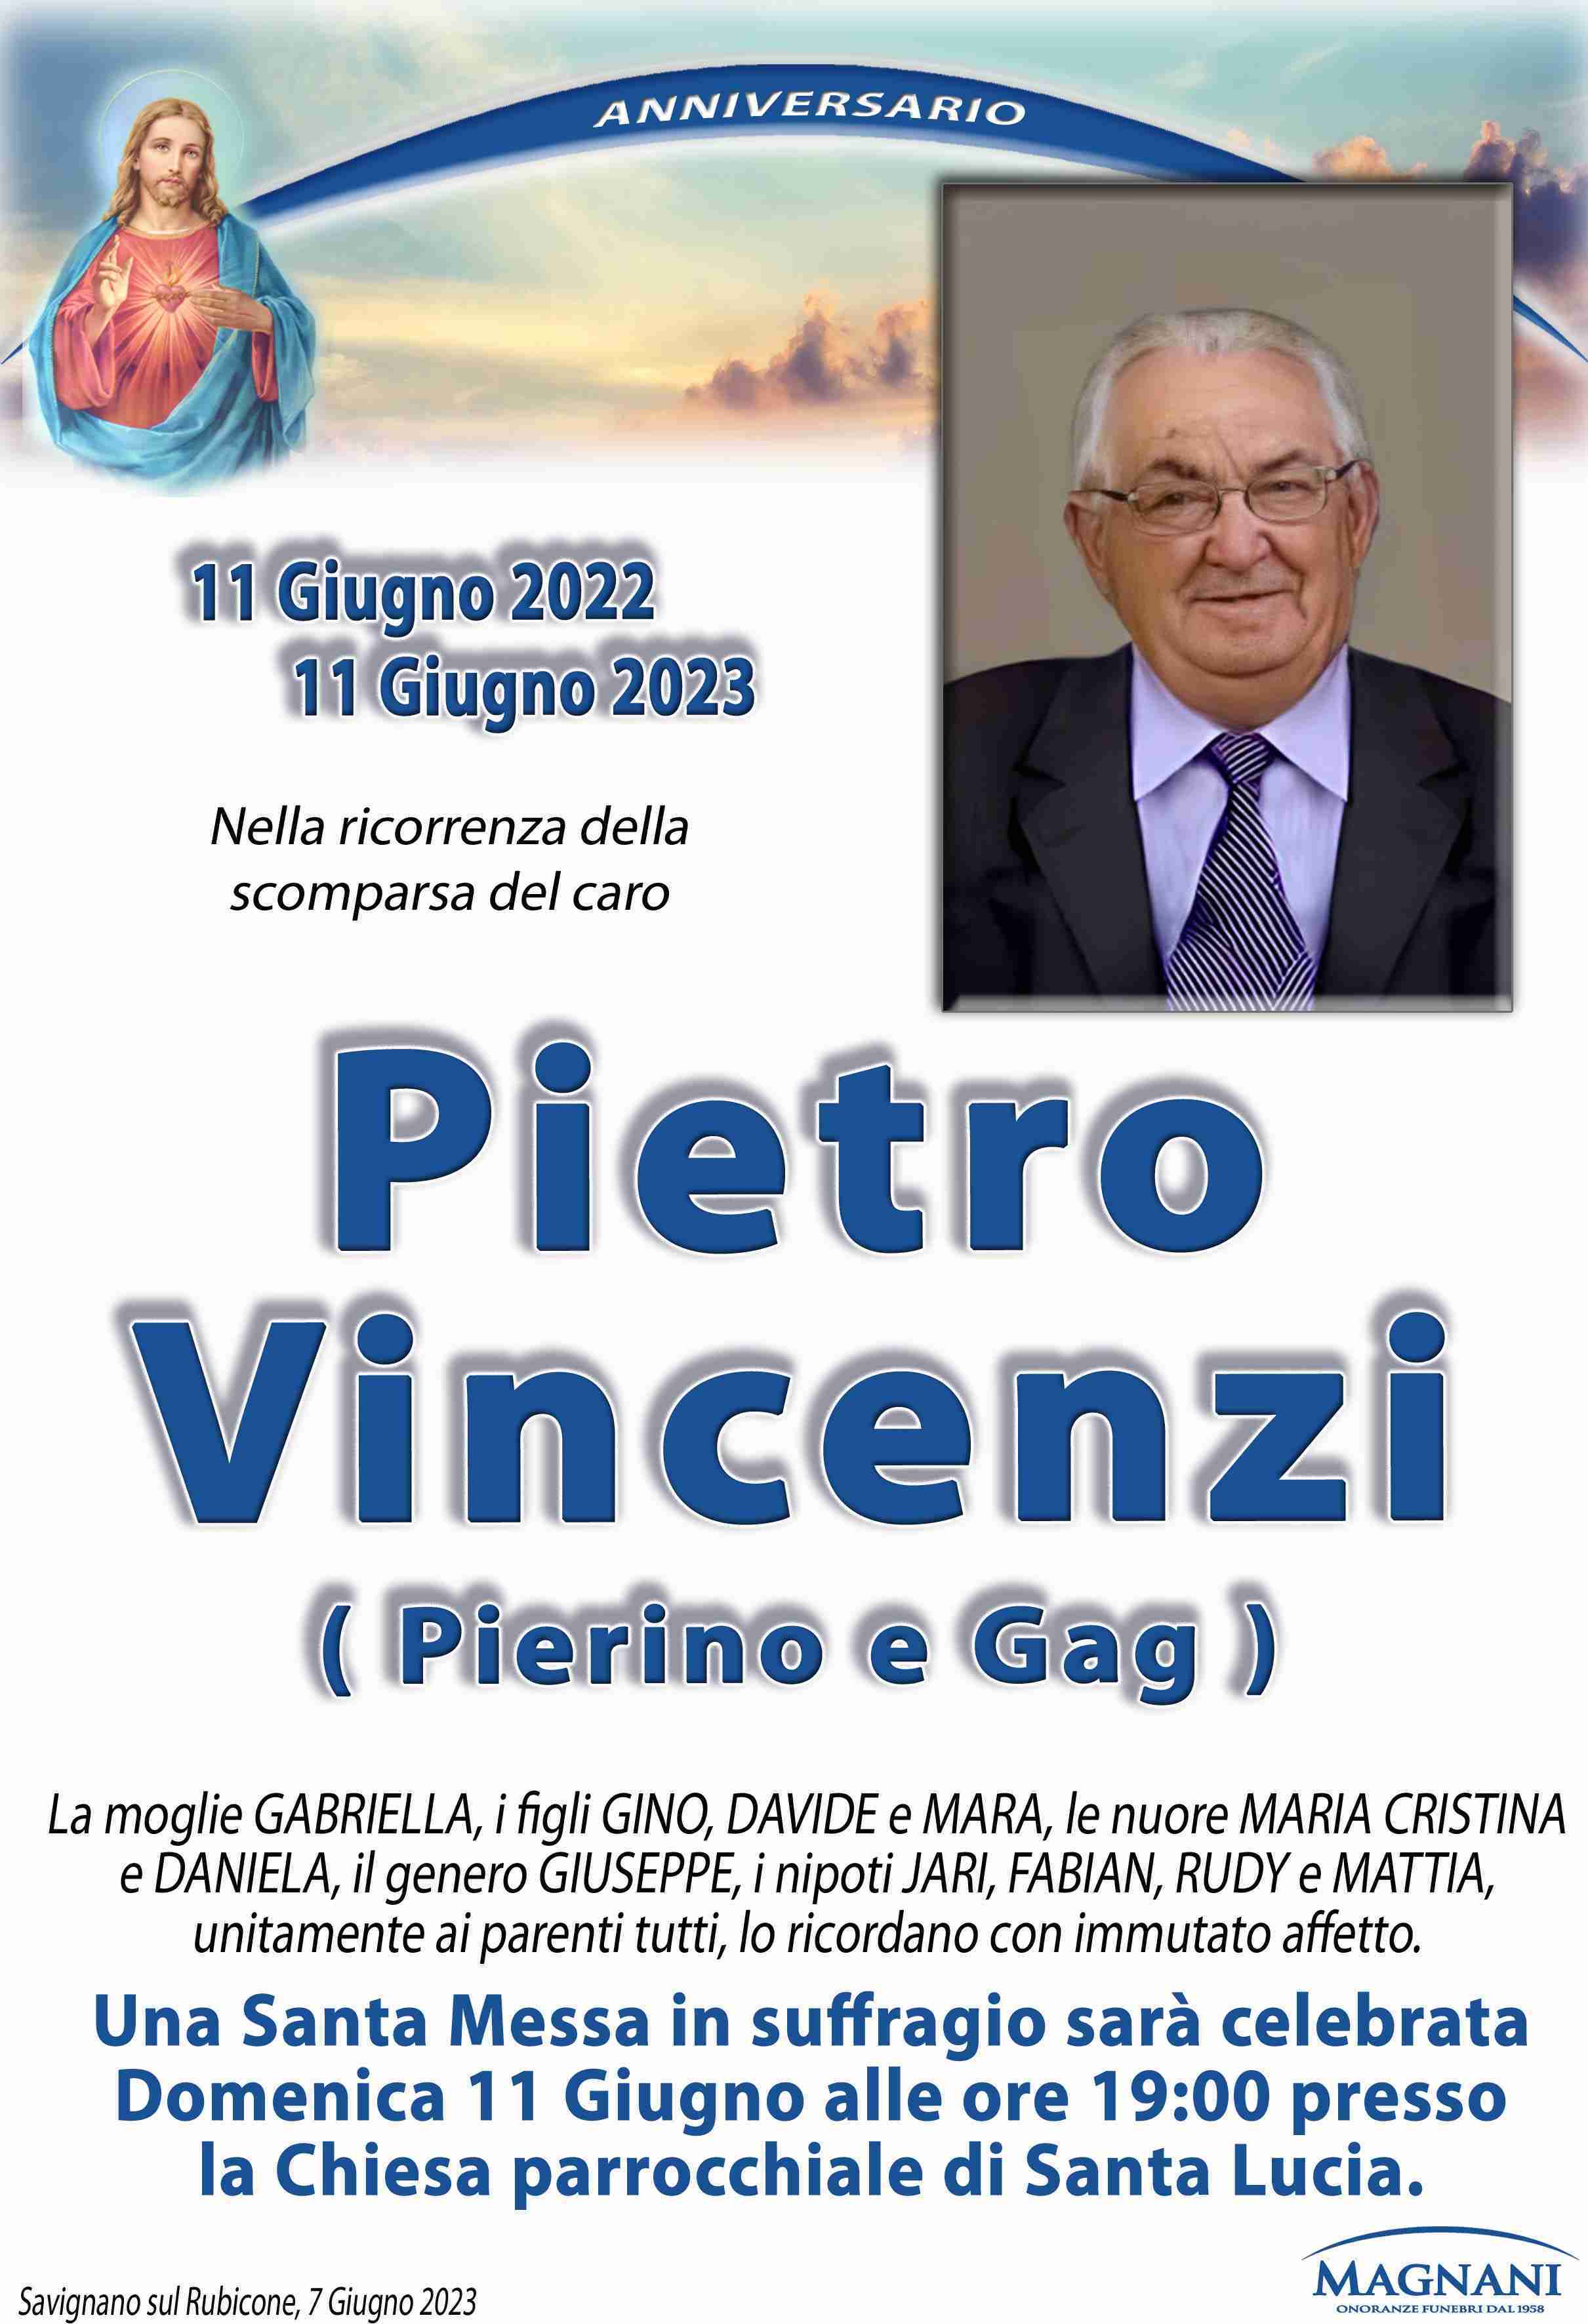 Pietro Vincenzi